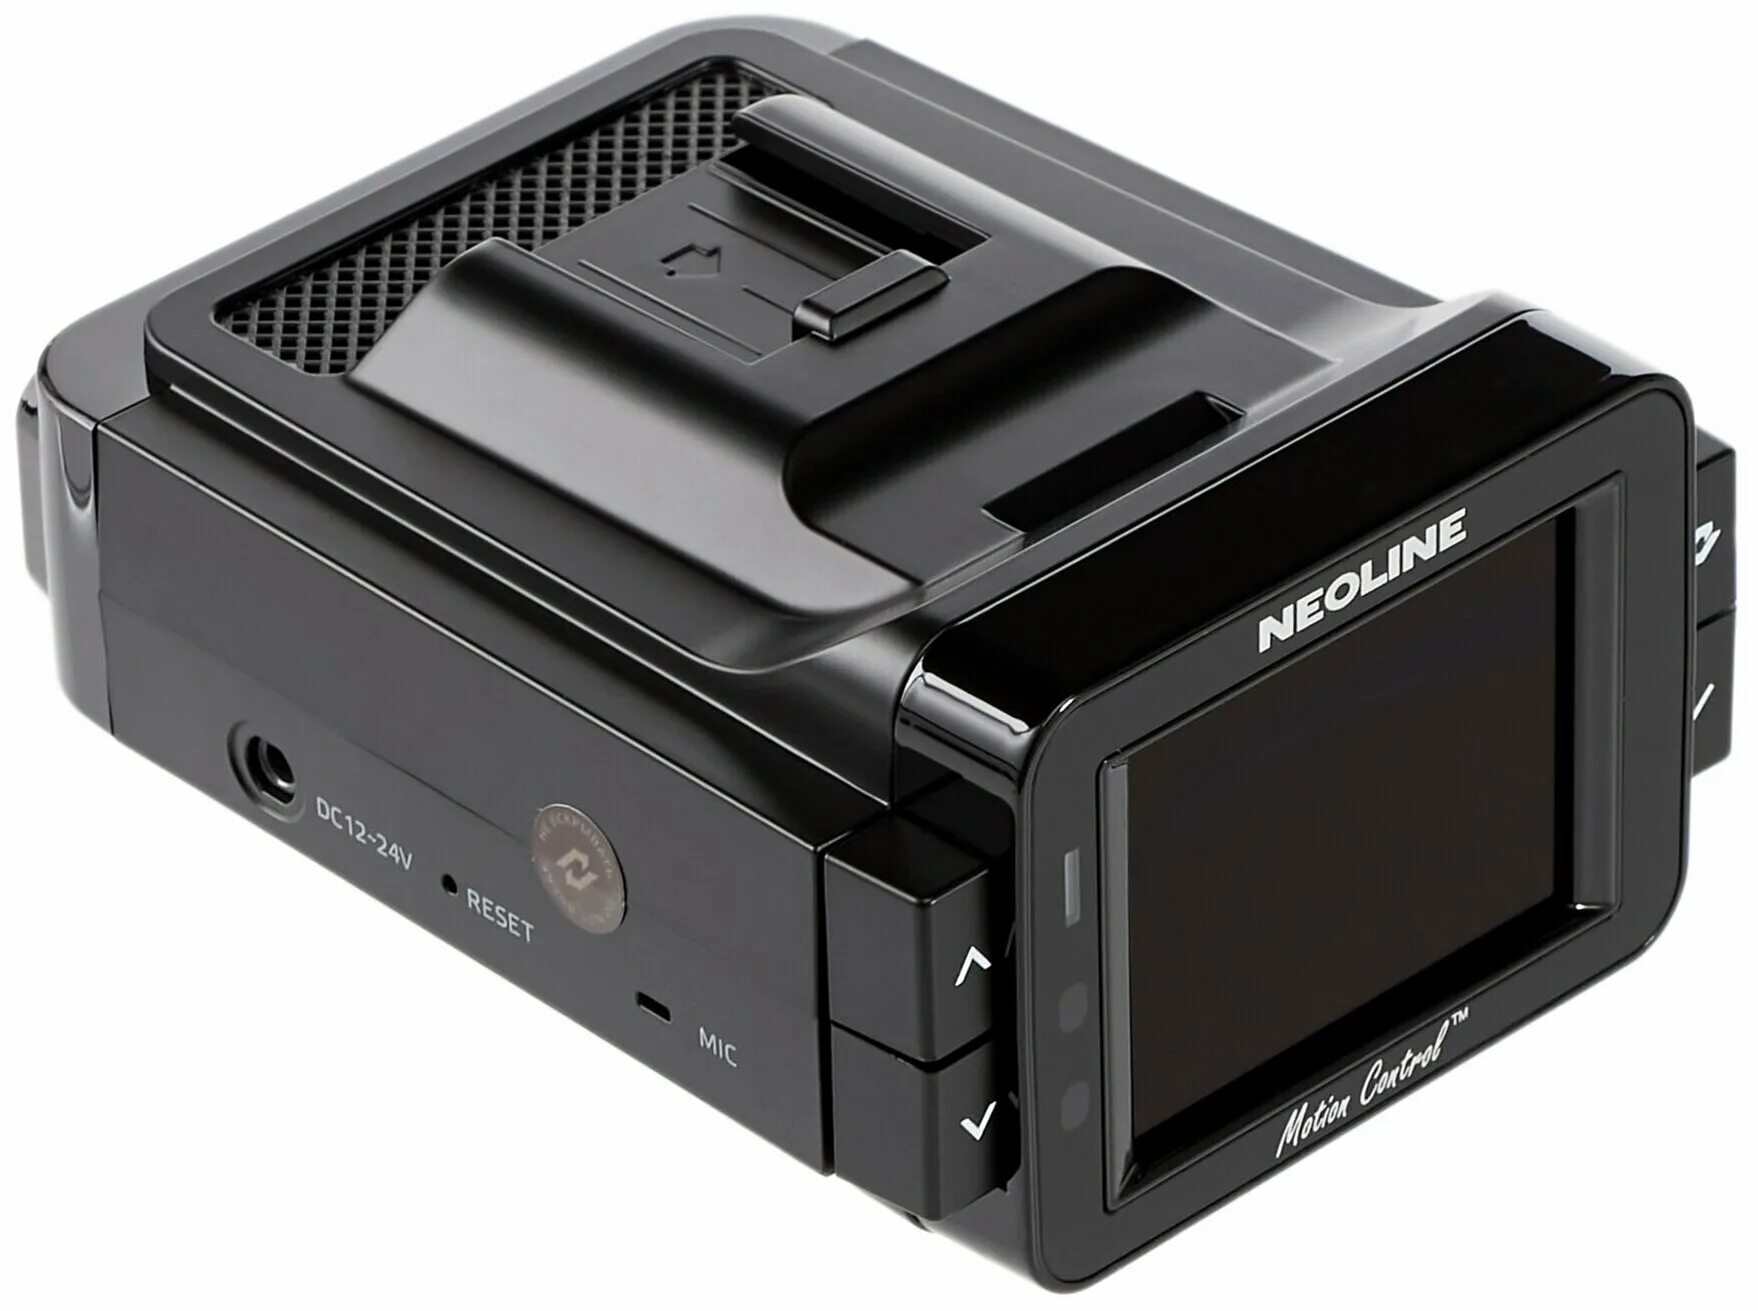 Neoline x cop 9100s цены. Видеорегистратор Neoline x-cop 9100s. Neoline 9100s характеристики. Neoline x-cop 9100s отзывы. Как настроить видеорегистратор x-cop 9100s.